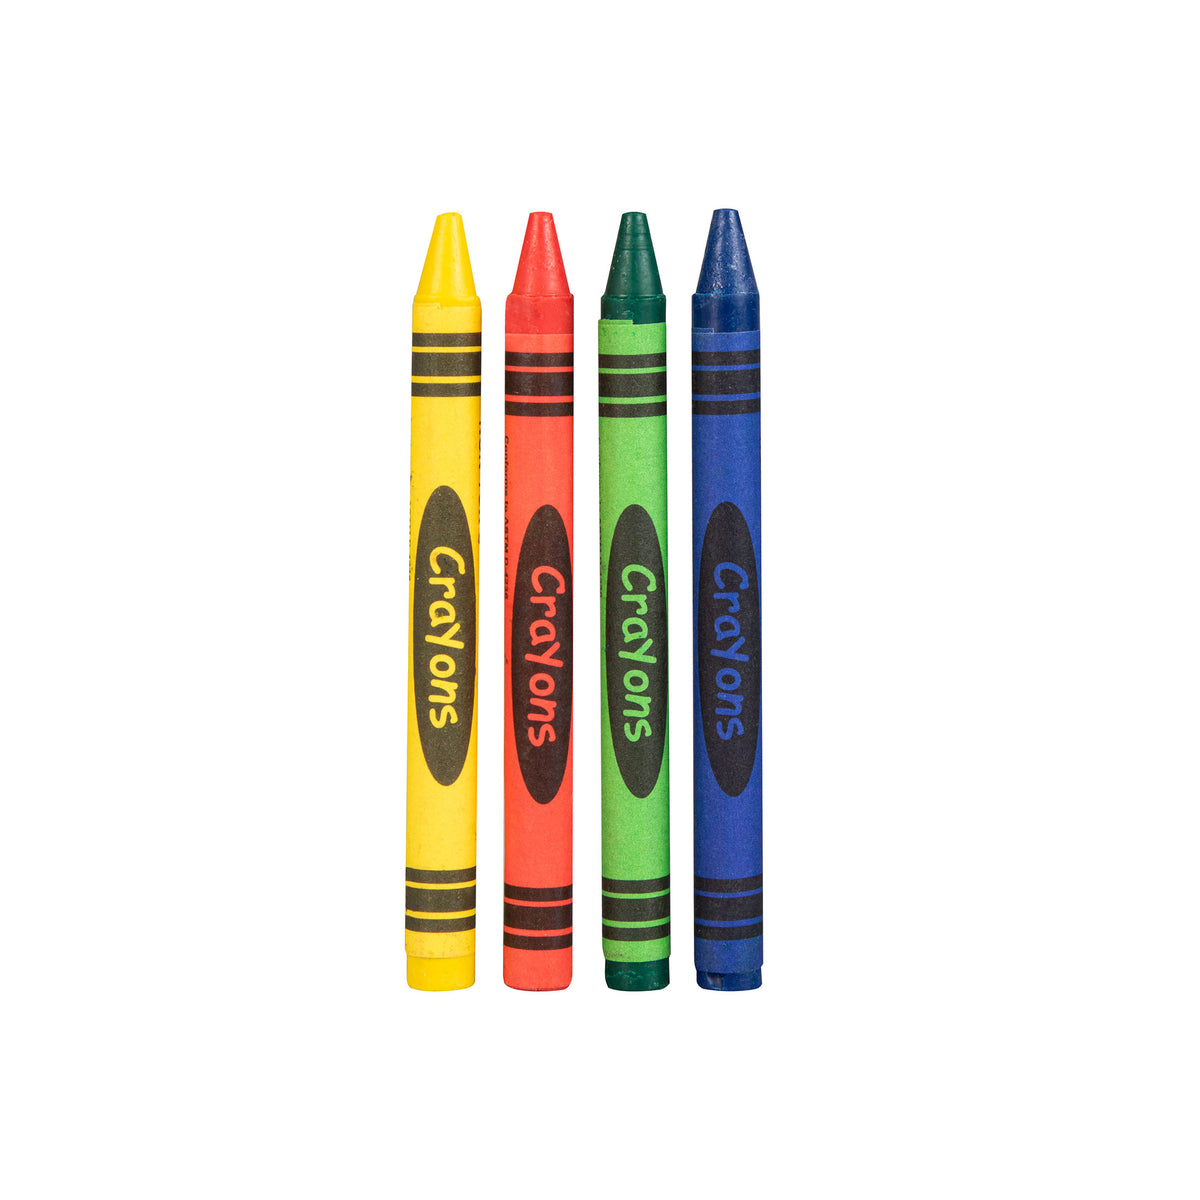 Dawn Mist - Crayons - 4 Crayon Coloring Set, Box of 12 Packs